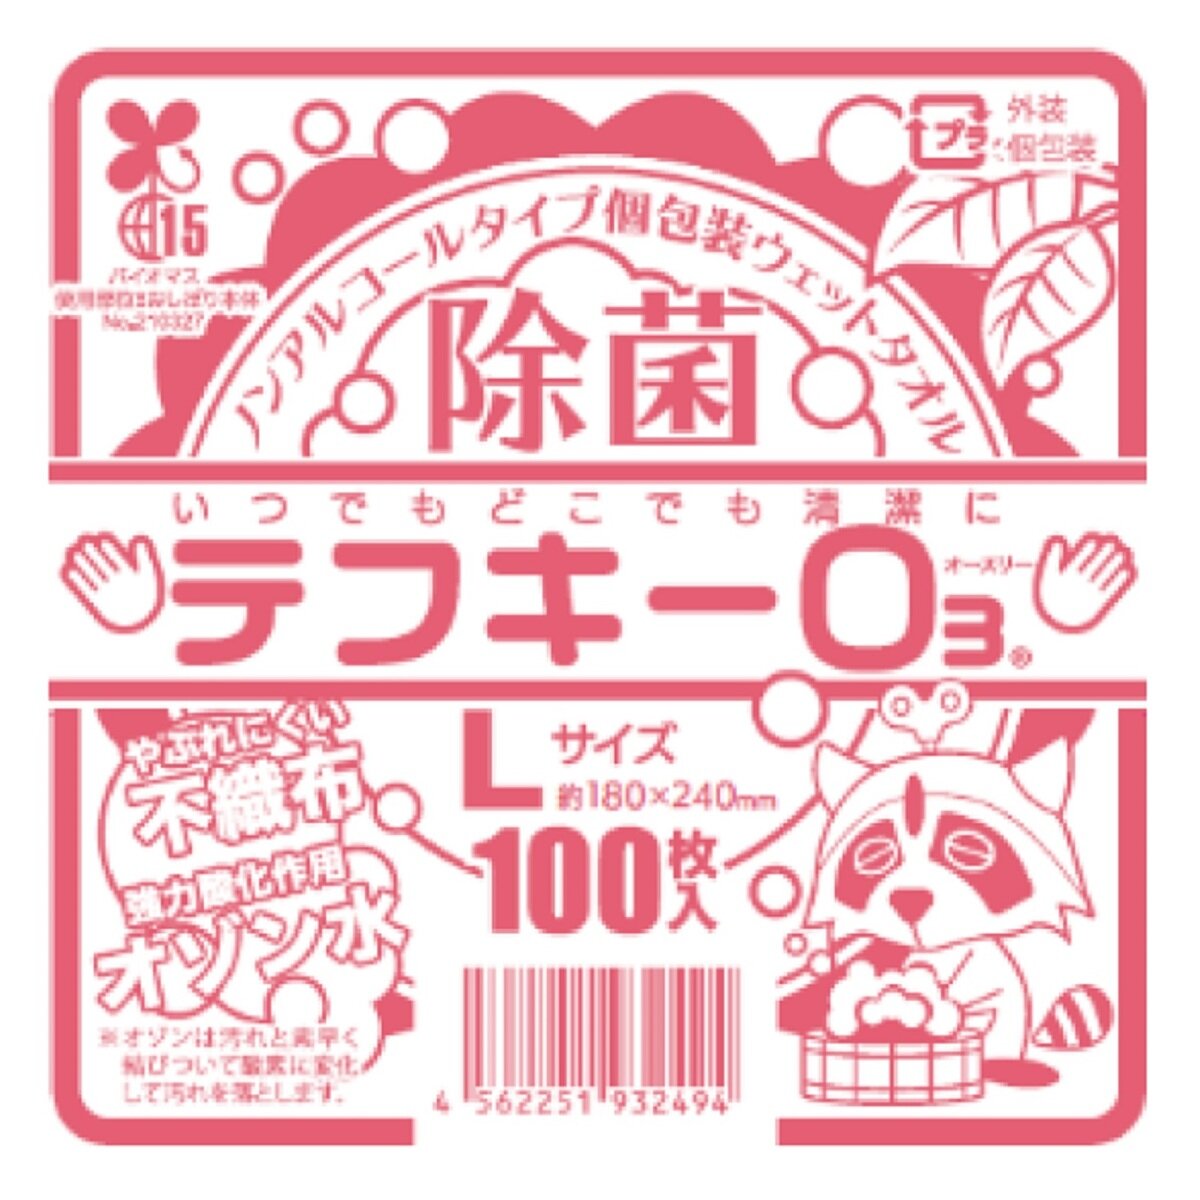 平型おしぼり テフキー Lサイズ 100枚入り x 36袋 バイオマスマーク認定 Costco Japan